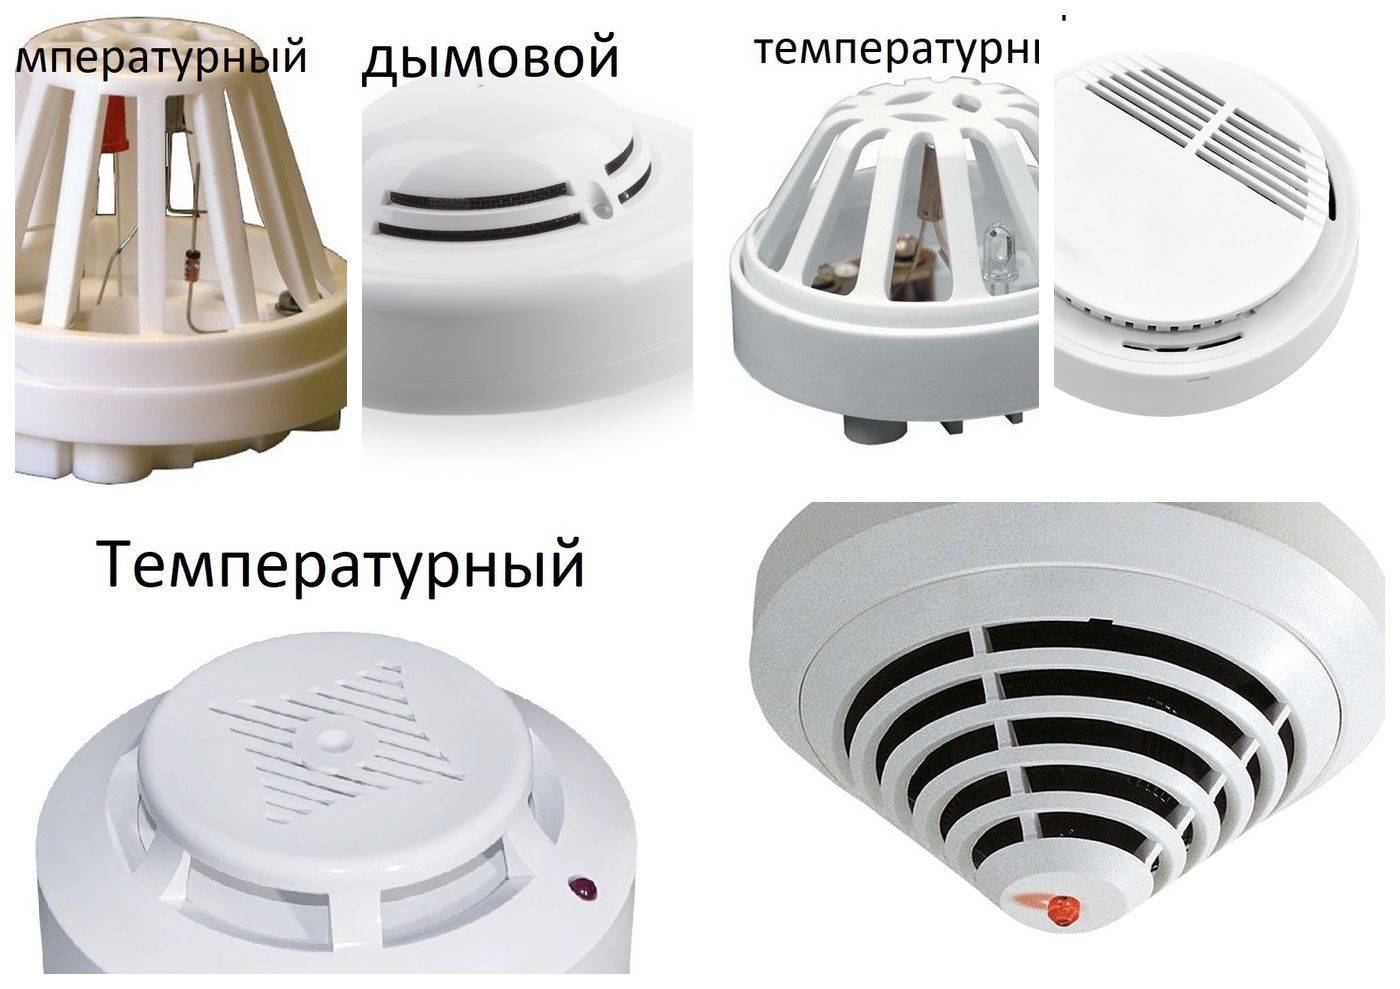 Подключение датчика температуры — схема подключения автоматики и нюансы использования в системе управления отоплением (130 фото, схем и видео монтажа)